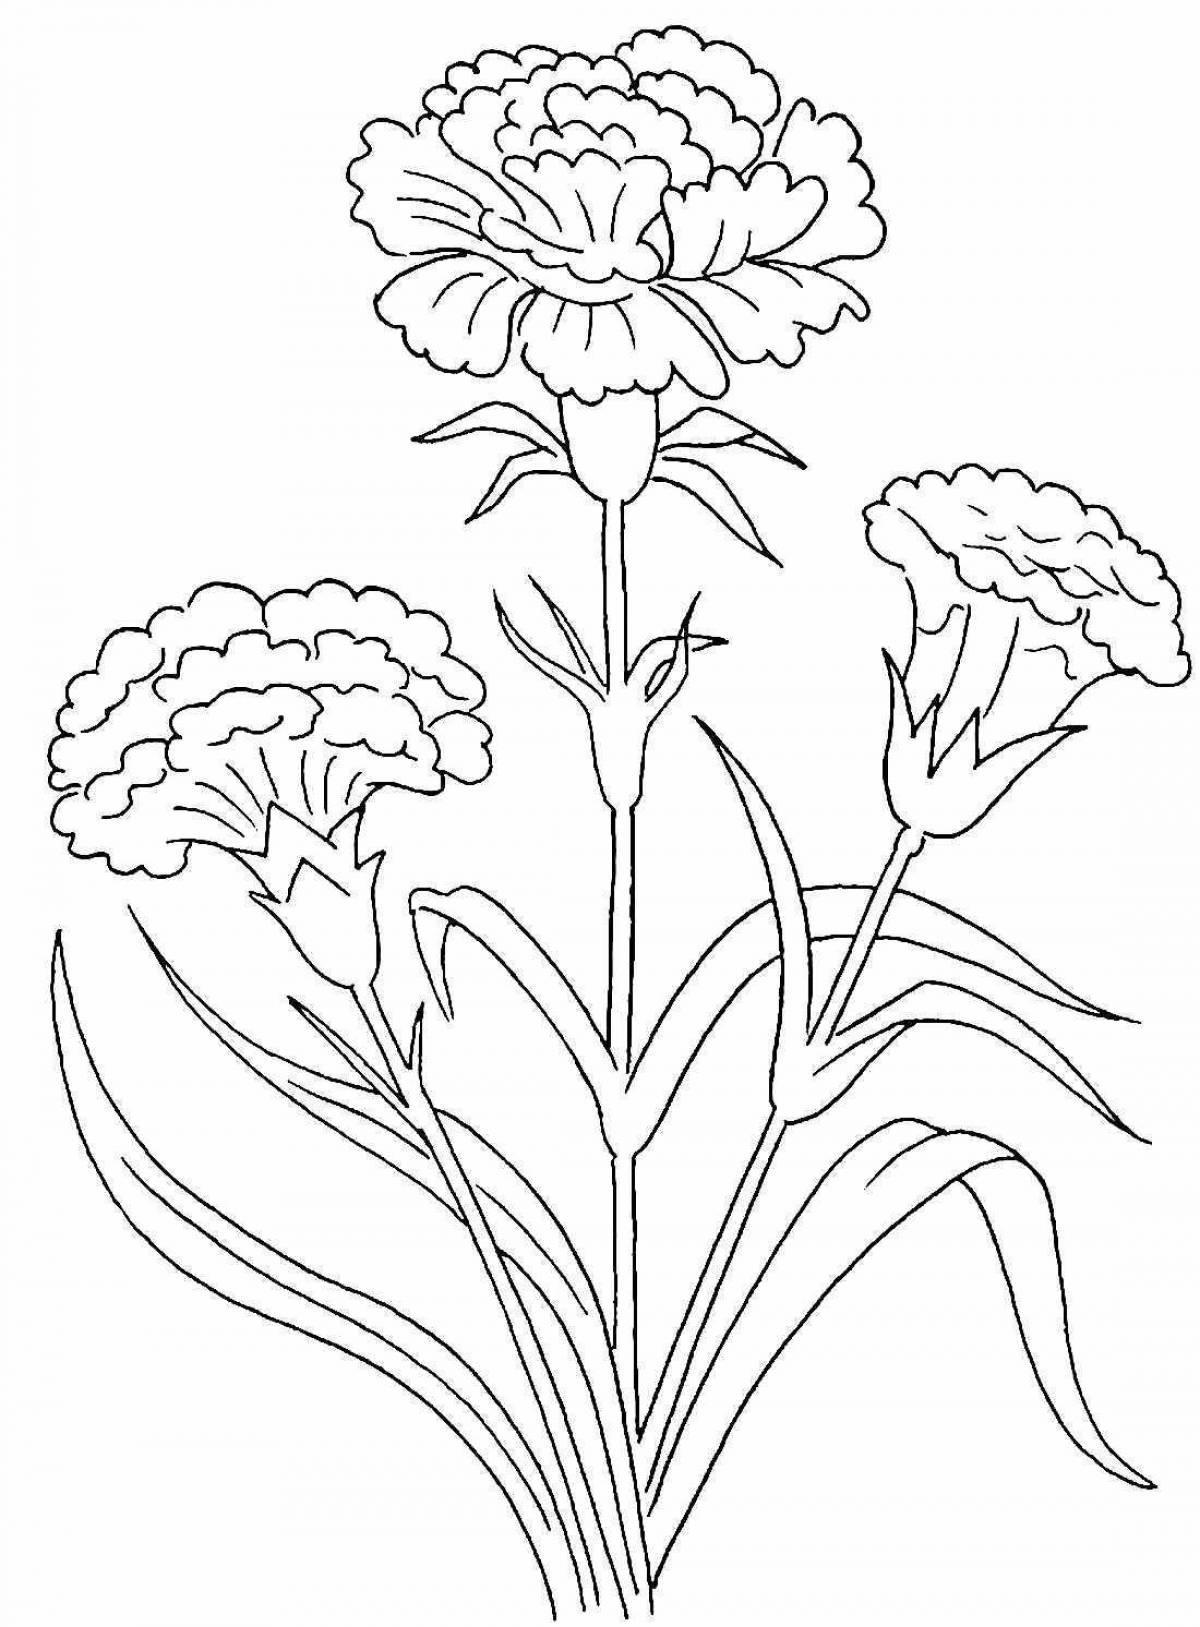 Elegant carnation coloring book for kids